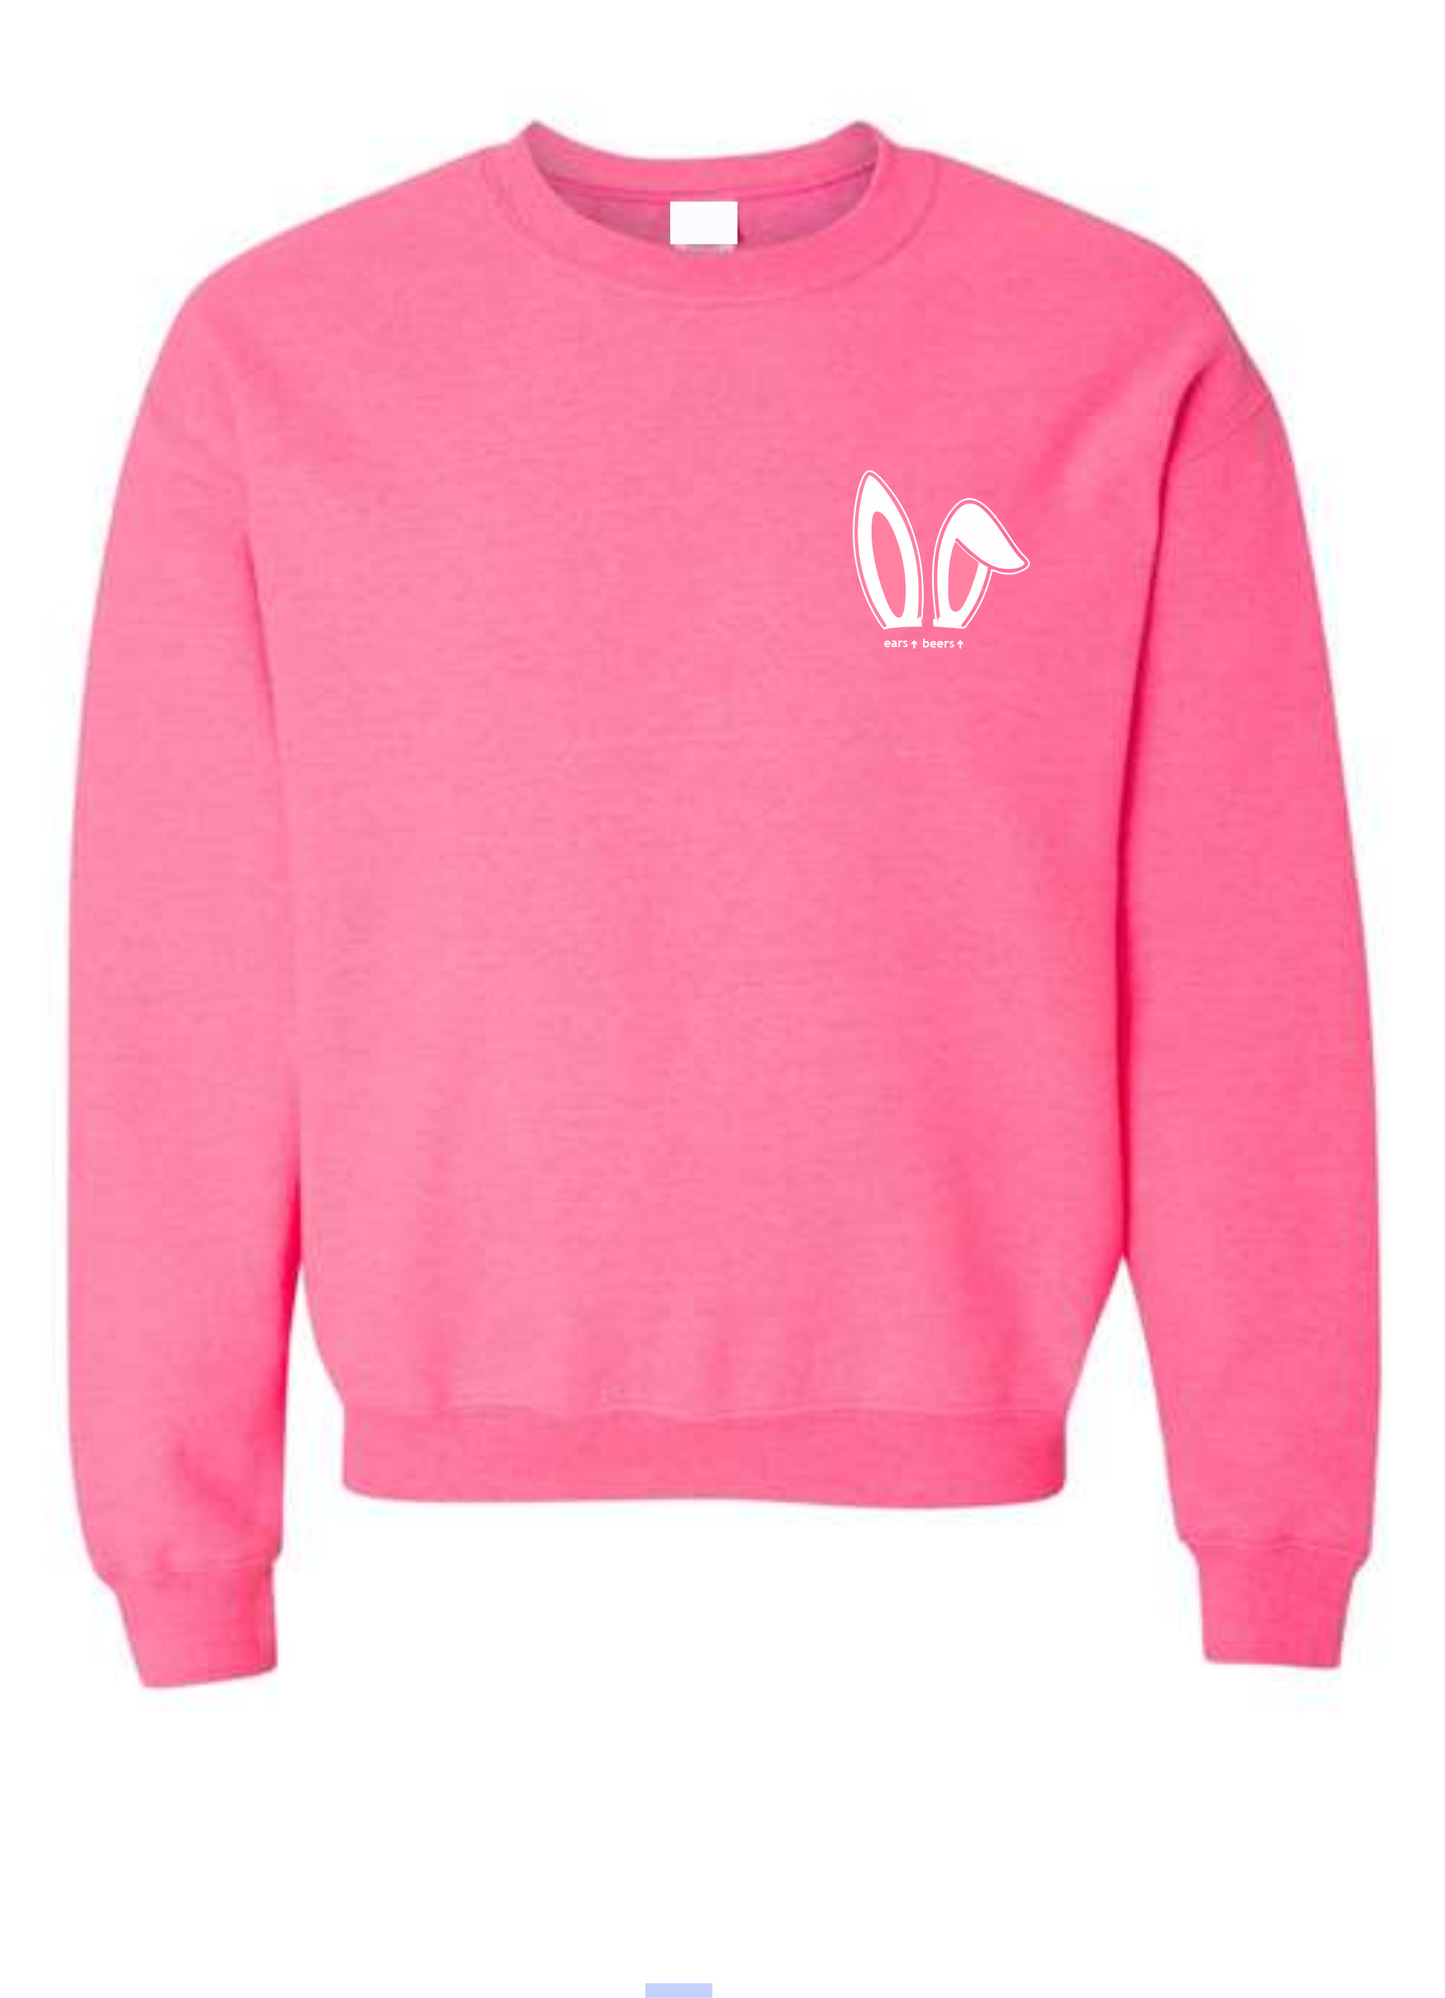 Pink Ears Crewneck Sweatshirt